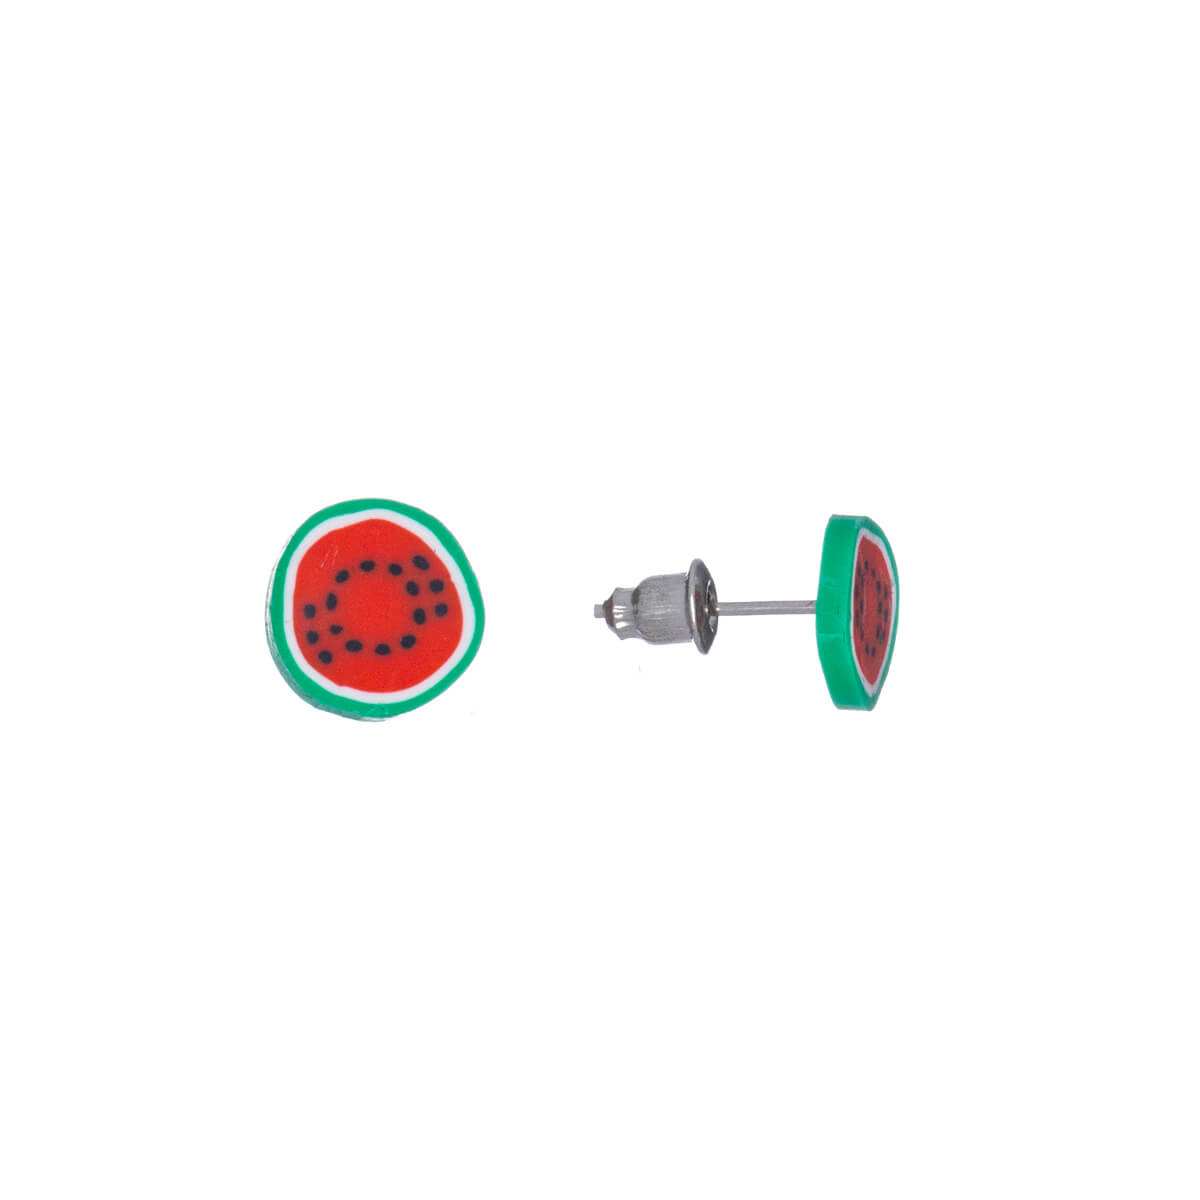 Watermelon berry earrings